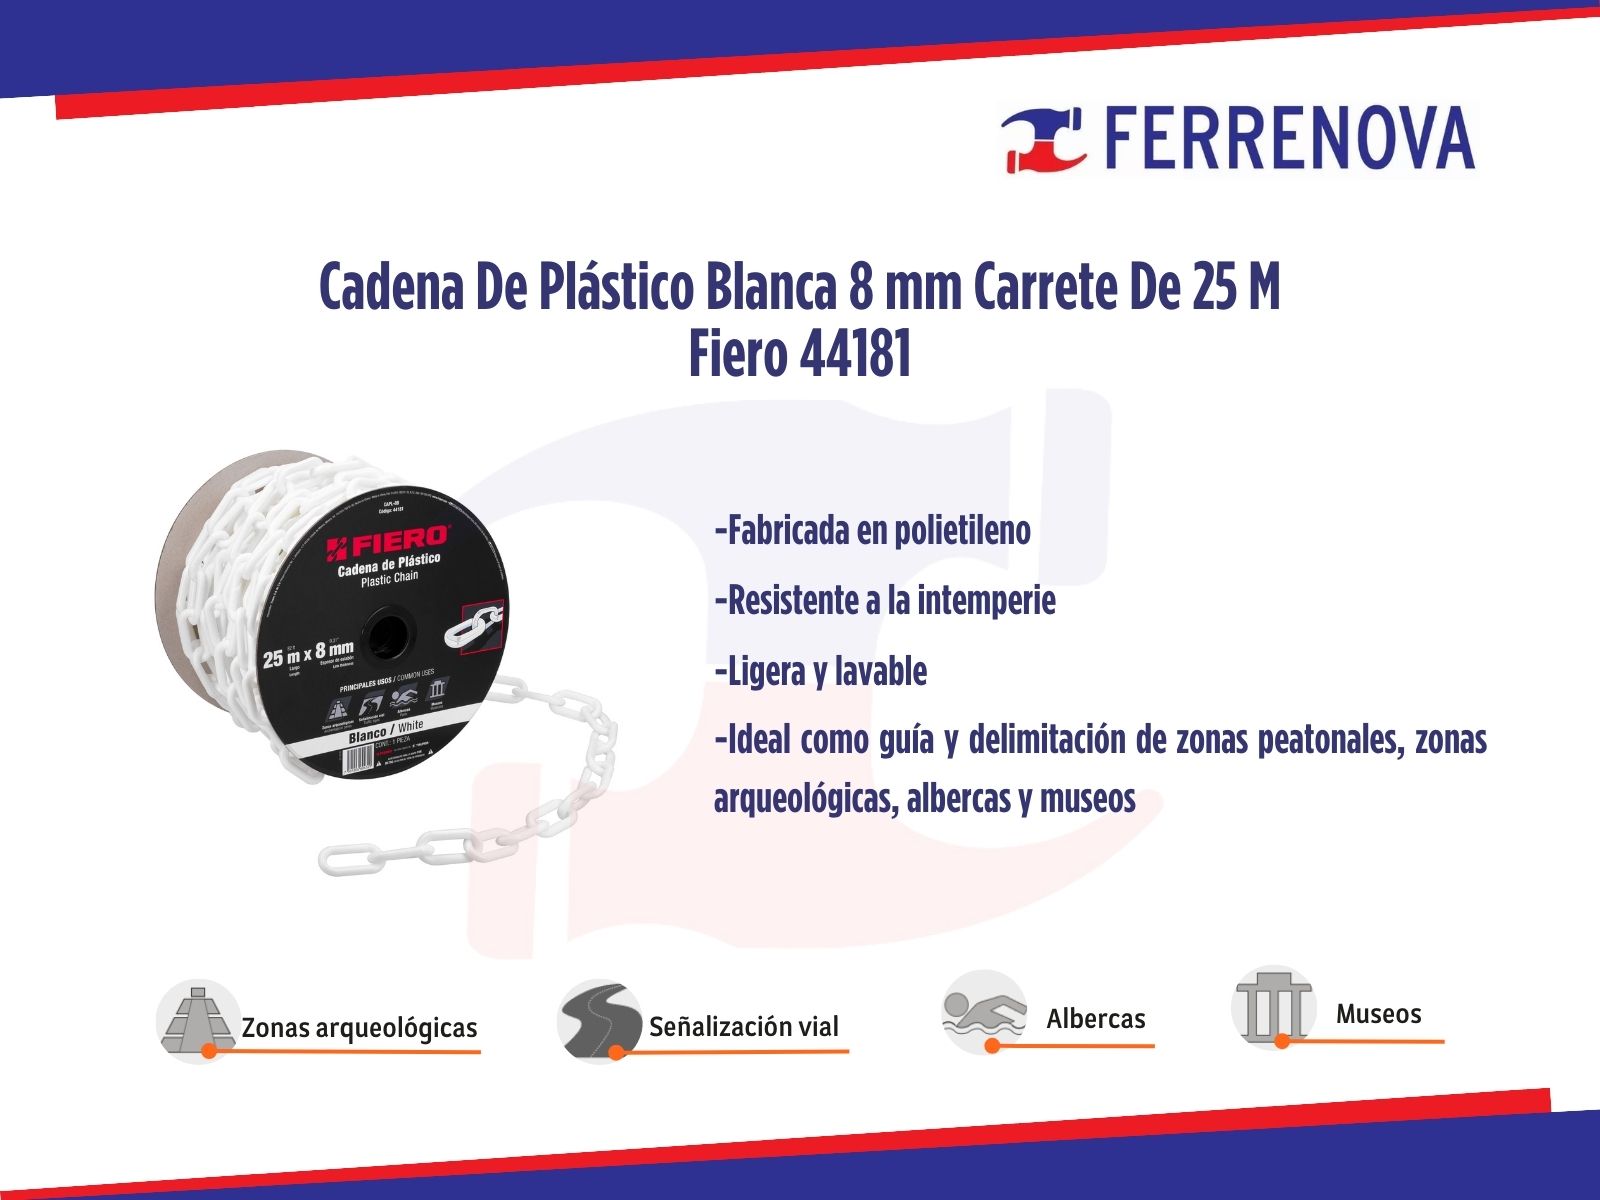 Cadena De Plástico Blanca 8 mm Carrete De 25 M Fiero 44181